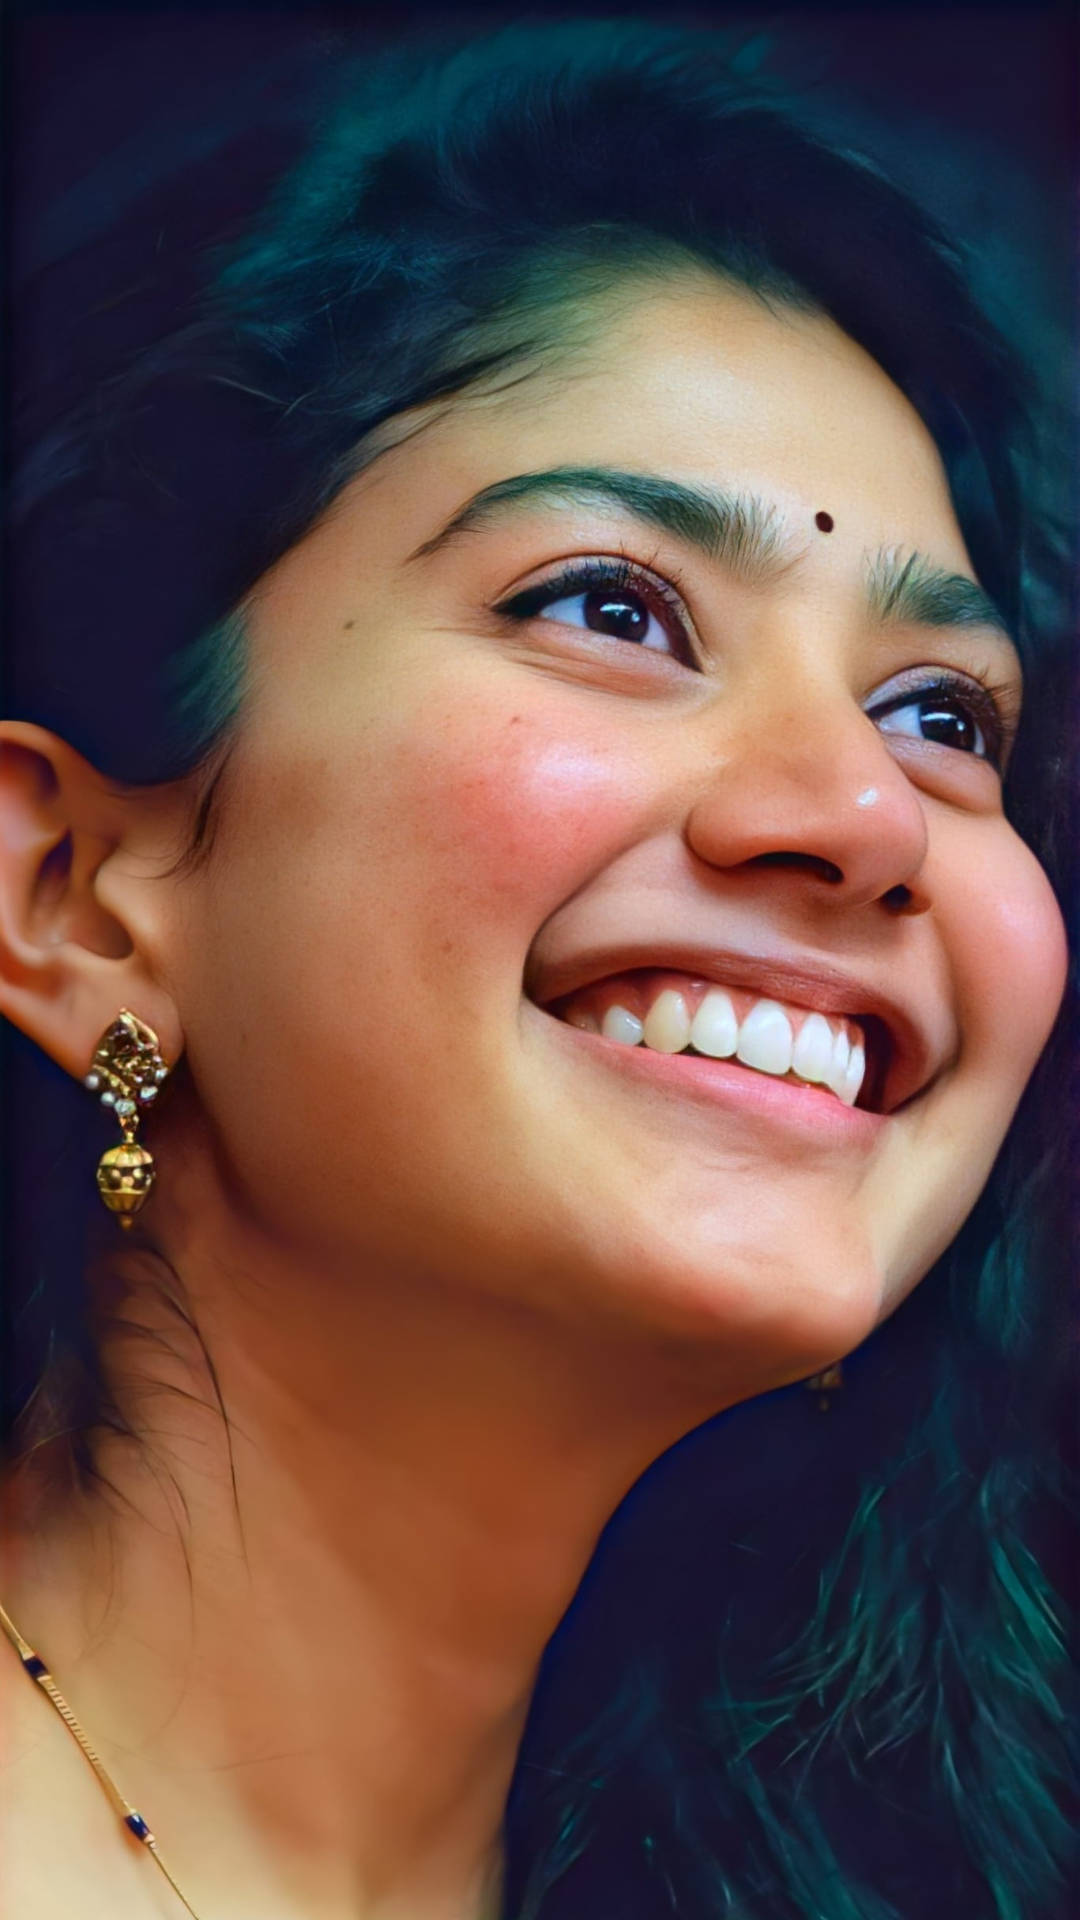 Sai Pallavi Genuine Smile Background